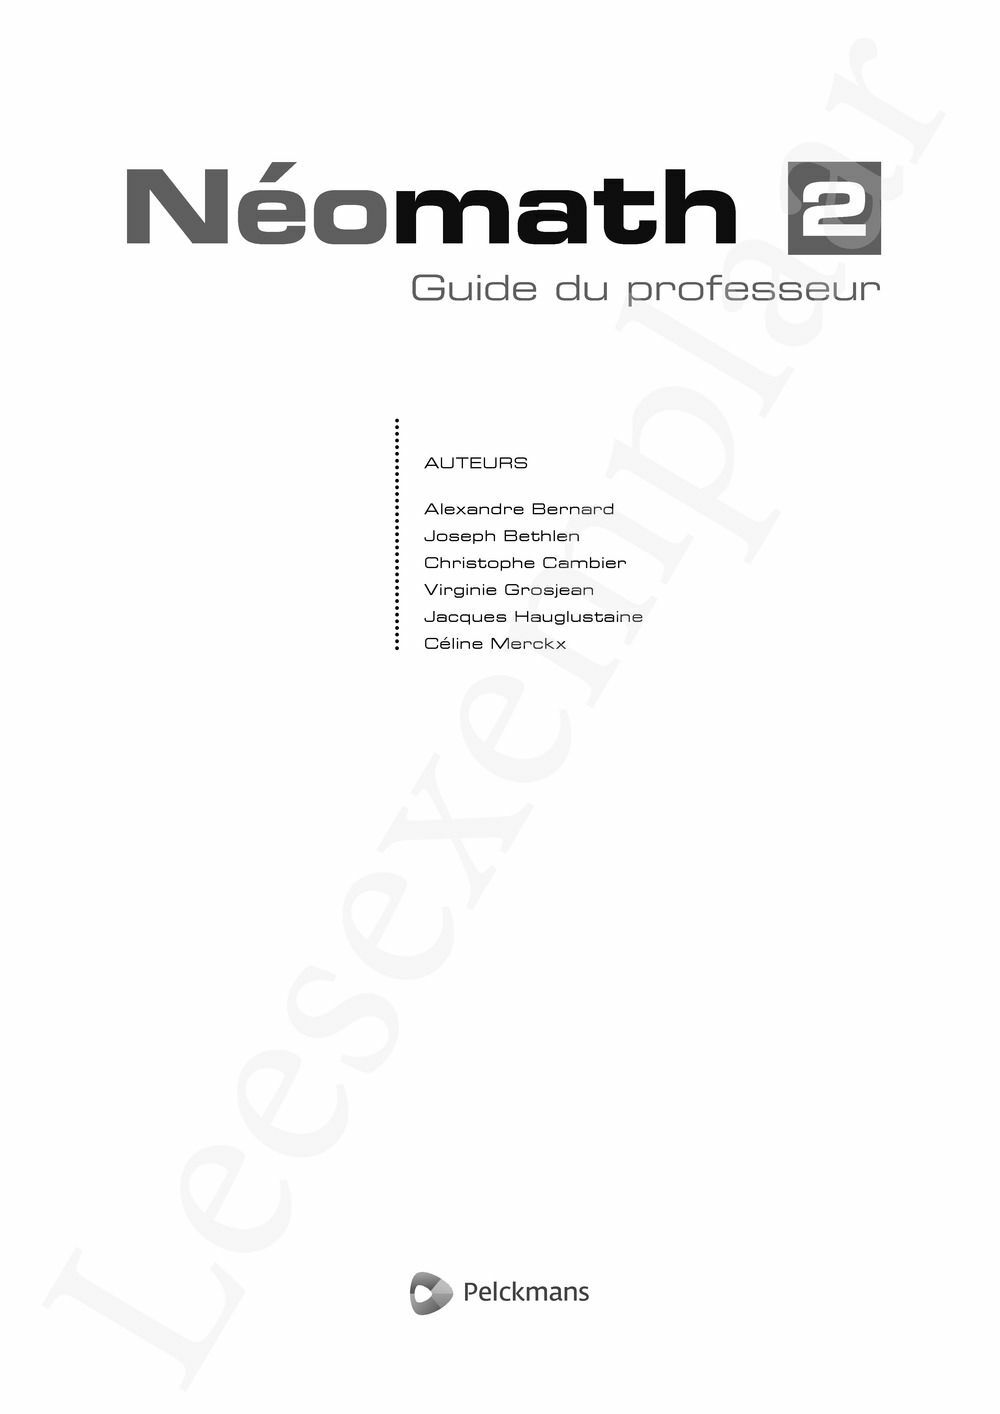 Preview: Néomath 2 Guide du professeur (Pelckmans Portail inclus)